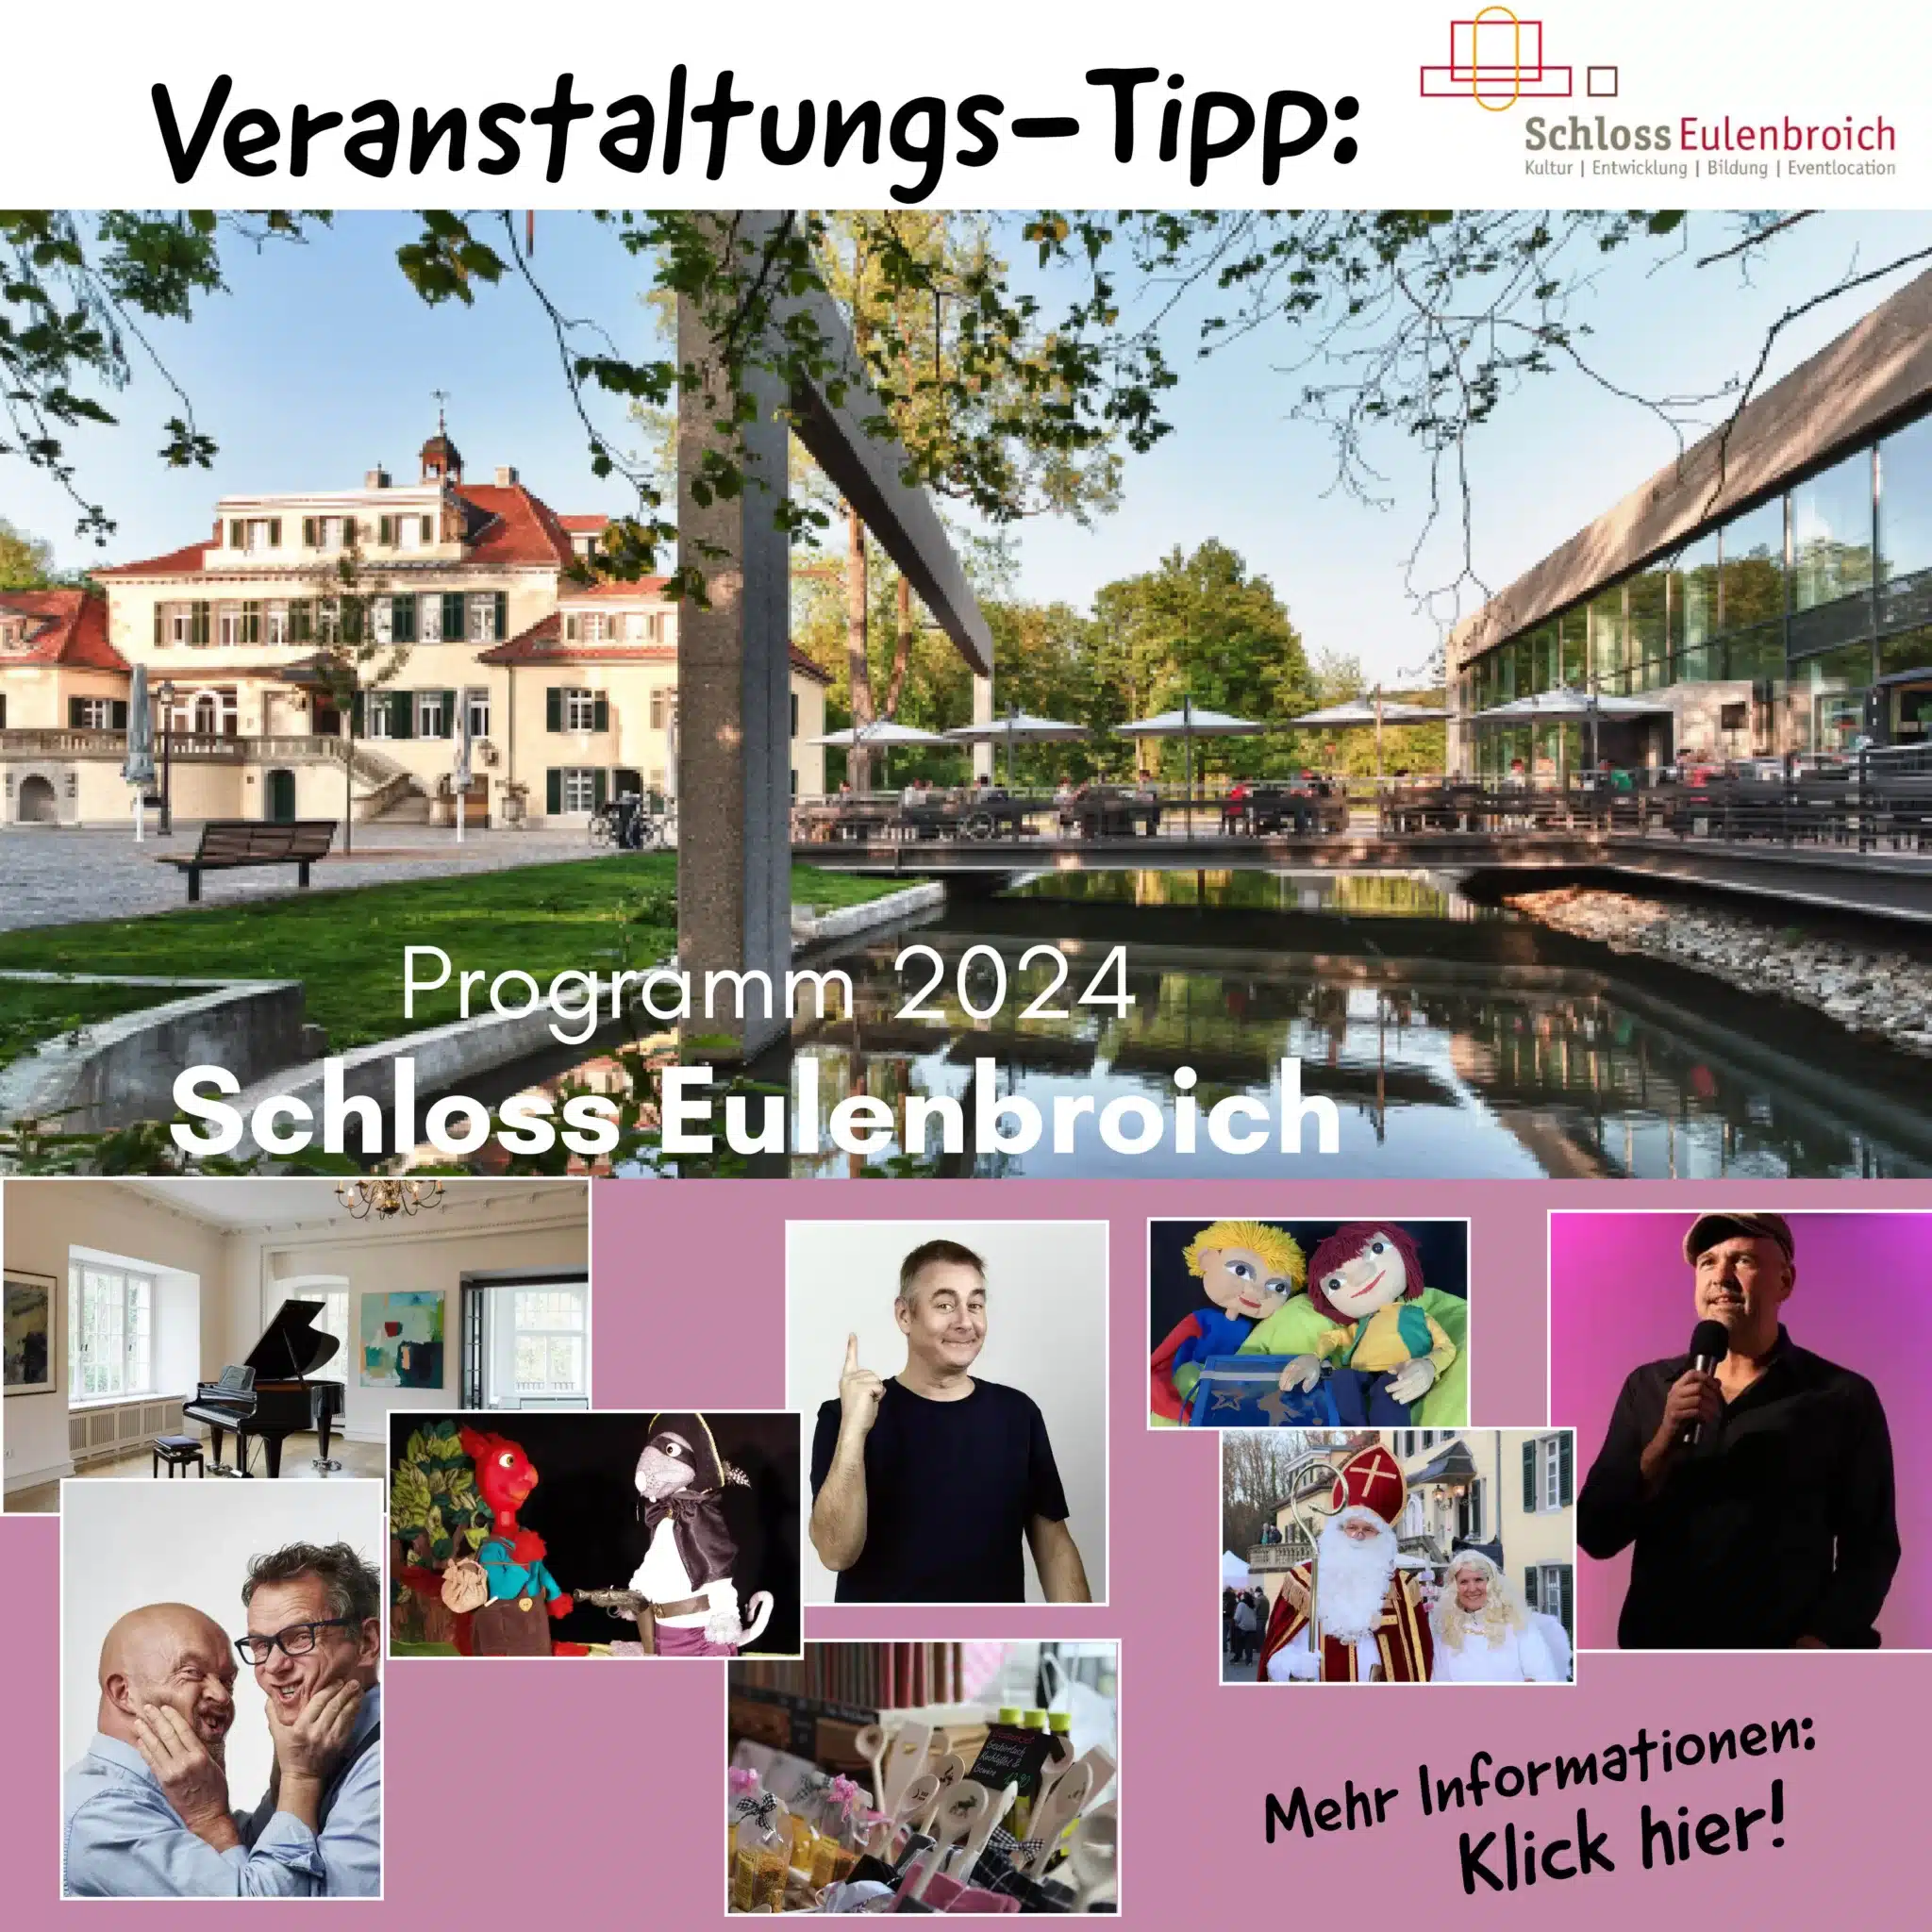 Schloss Eulenbroich Programm 2024 Veranstaltungen